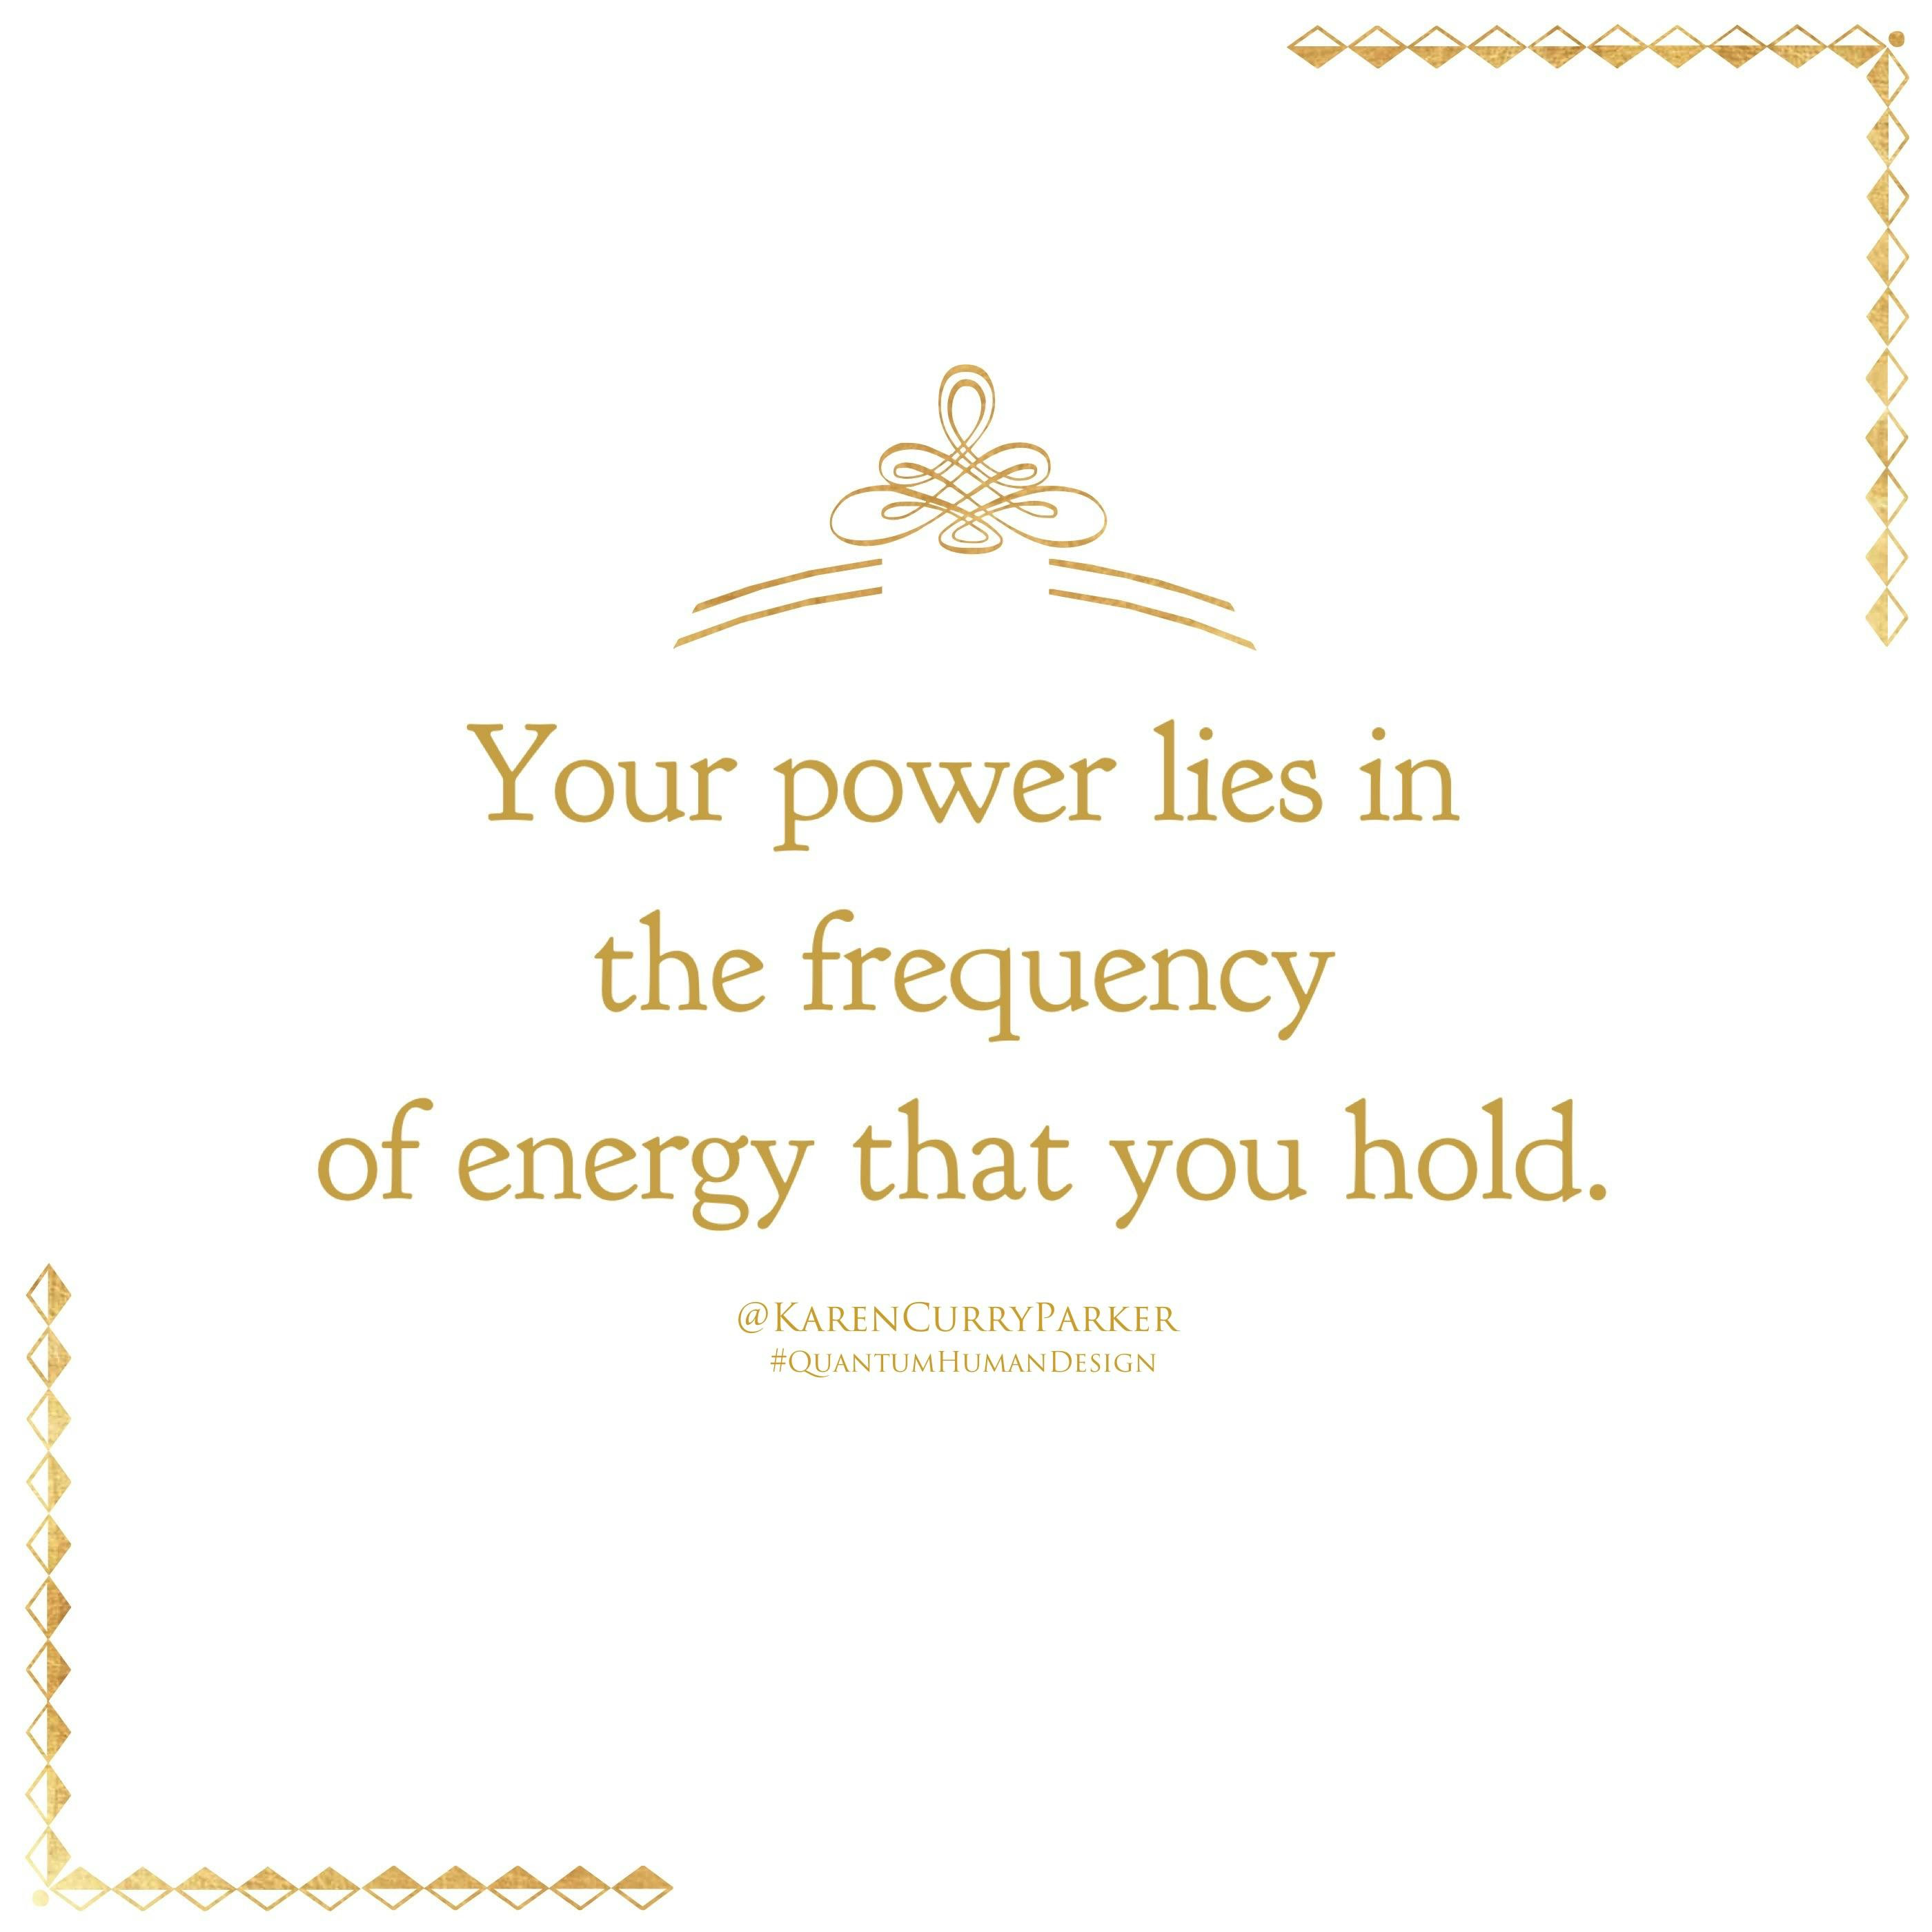 uma imagem sobre energia e história O seu poder está na frequência de energia que você tem